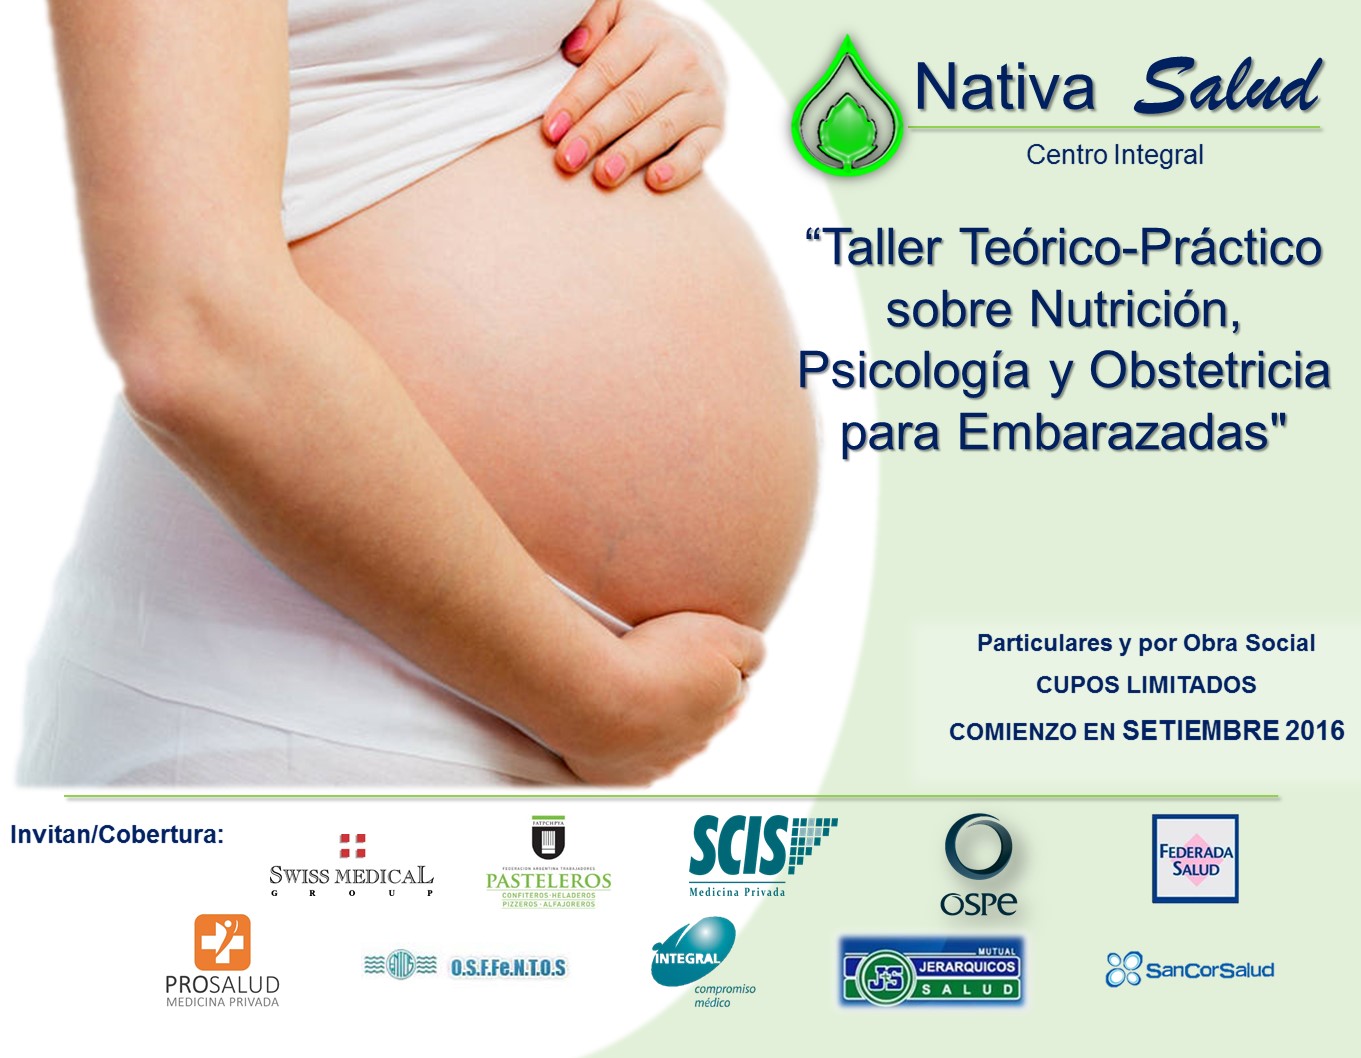 Taller Teórico-Práctico sobre Nutrición, Psicología y Obstetricia